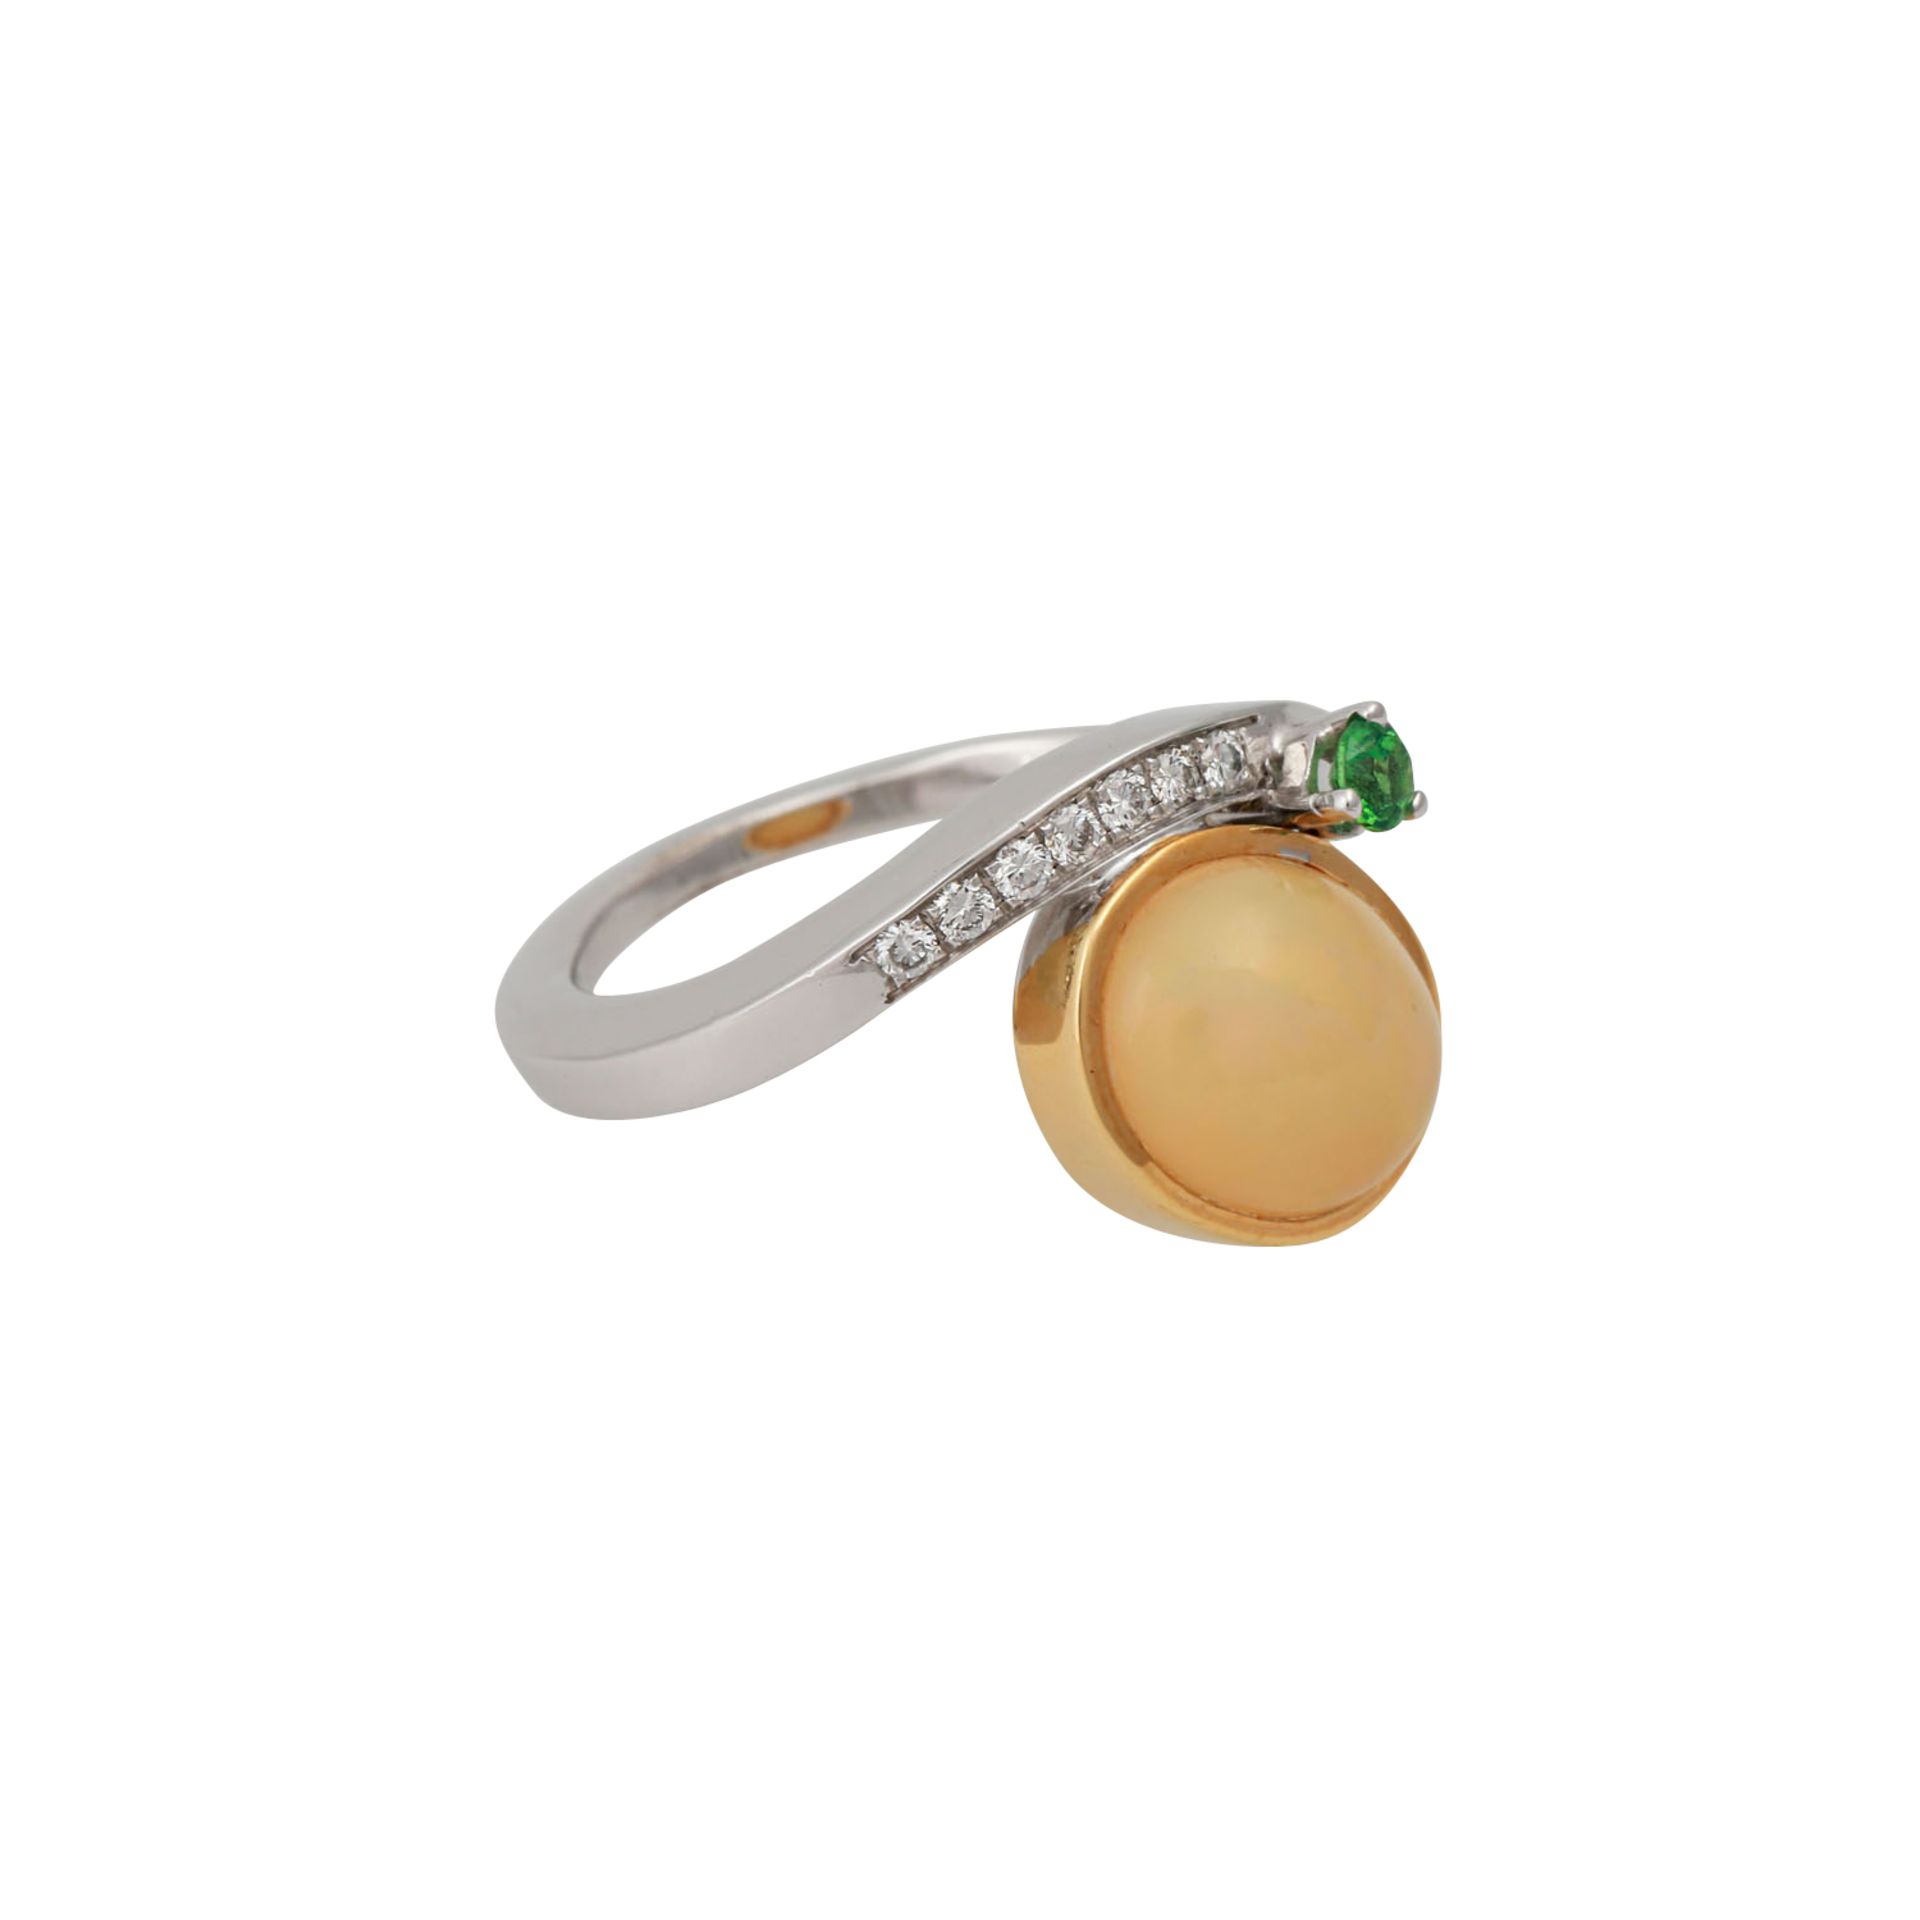 Ring mit ovalem Opal, 7 Brillanten, zus. ca. 0,18 ctund kl. grünem Schmuckstein, NP: 990 €, GG/WG